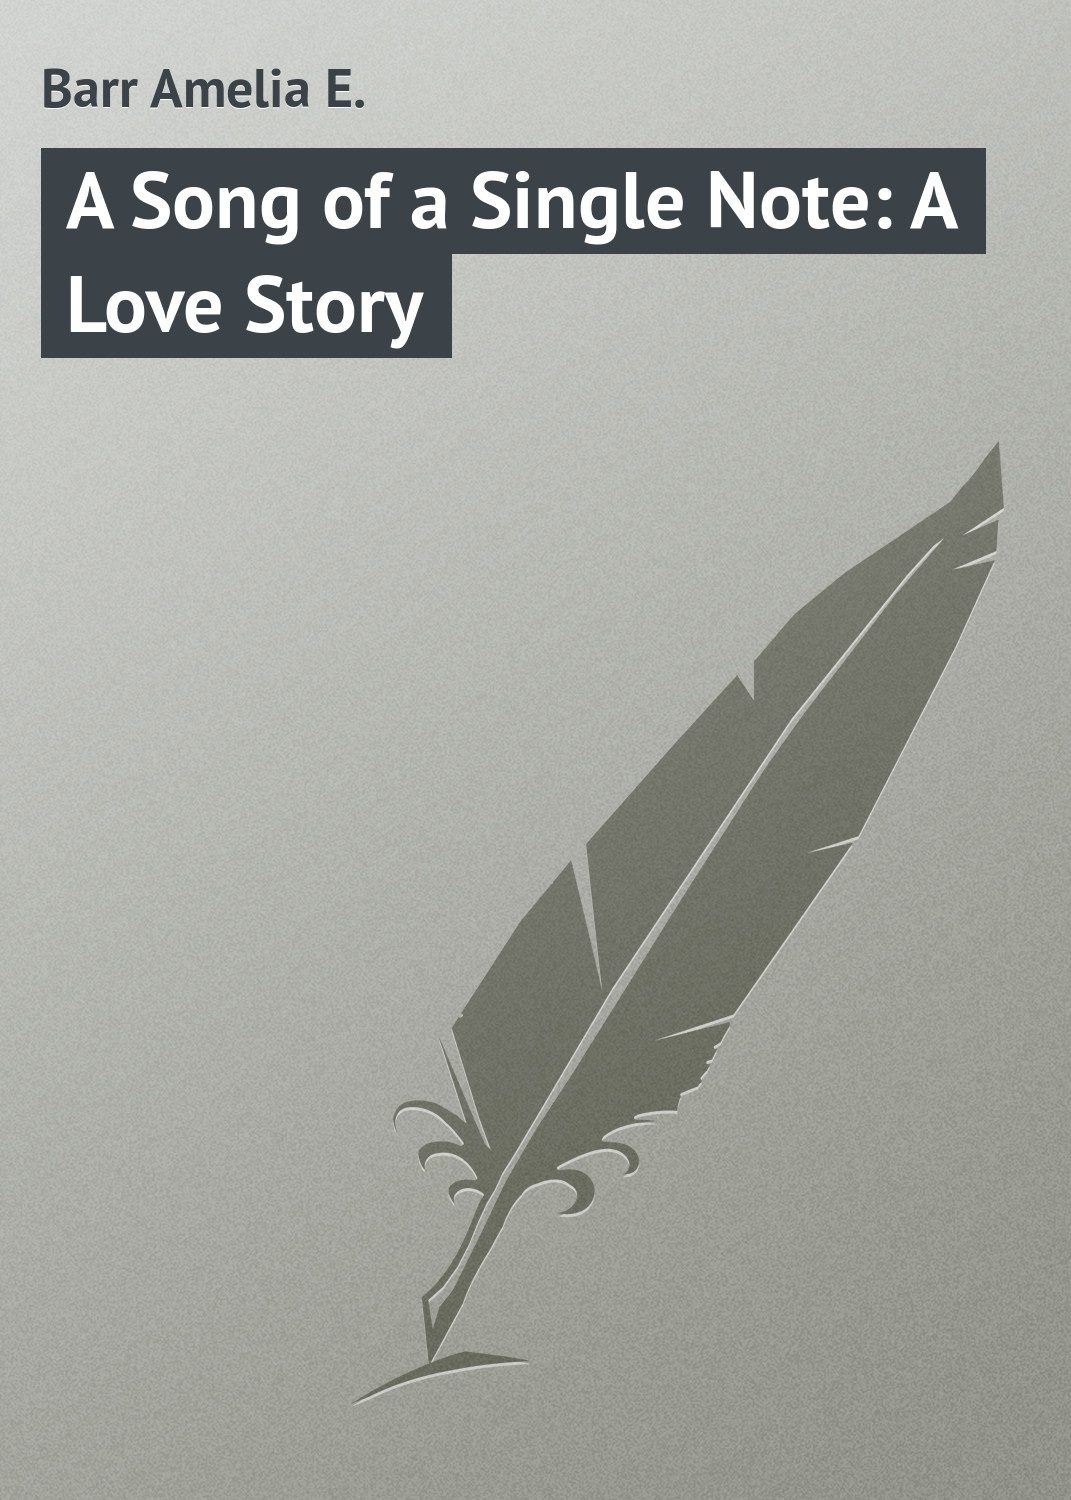 Книга A Song of a Single Note: A Love Story из серии , созданная Amelia Barr, может относится к жанру Зарубежная классика. Стоимость электронной книги A Song of a Single Note: A Love Story с идентификатором 23147571 составляет 5.99 руб.